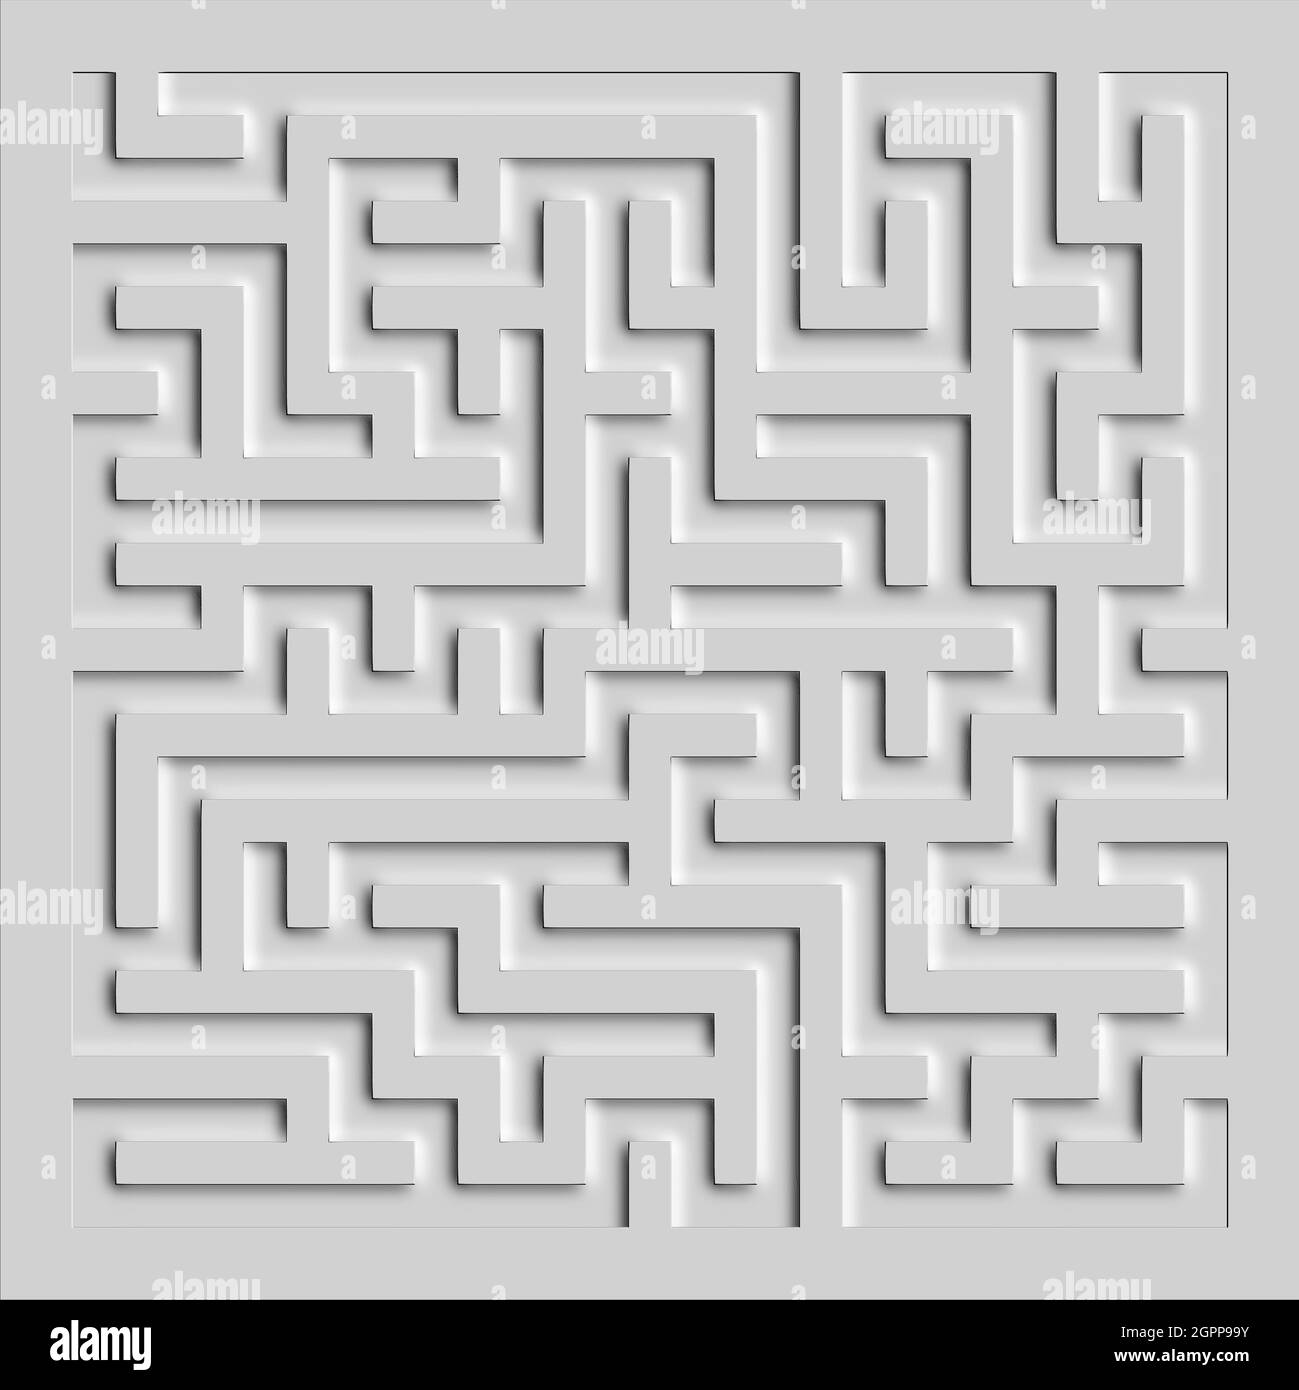 illustrazione 3d - sfondo a labirinto estruso. Foto Stock